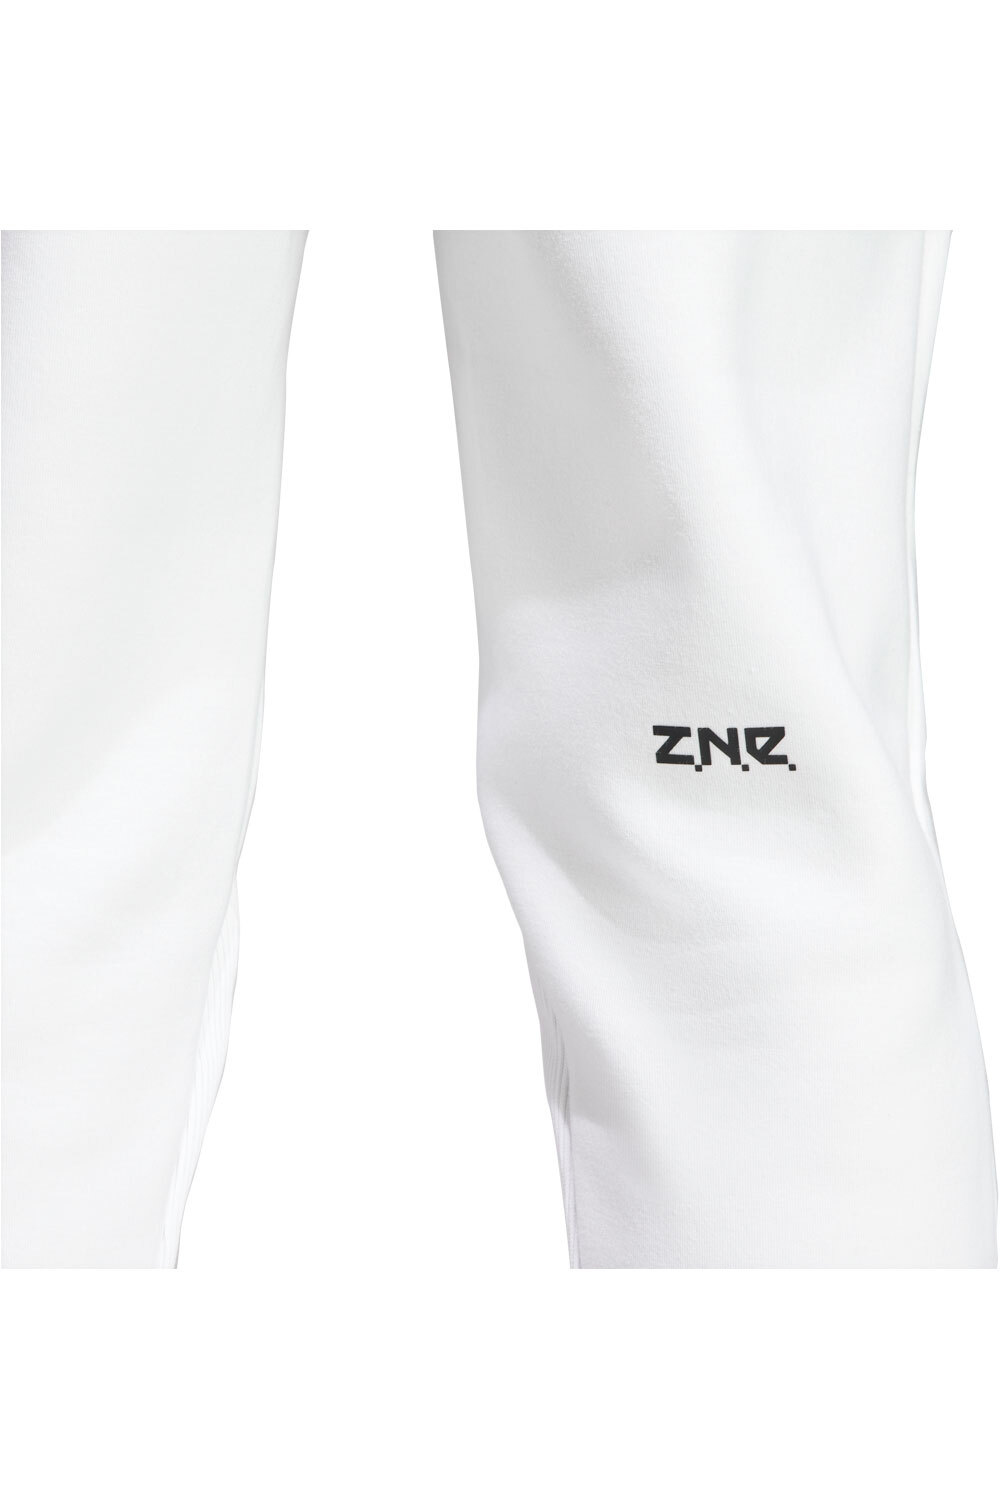 adidas pantalón hombre M Z.N.E. PR PT vista detalle